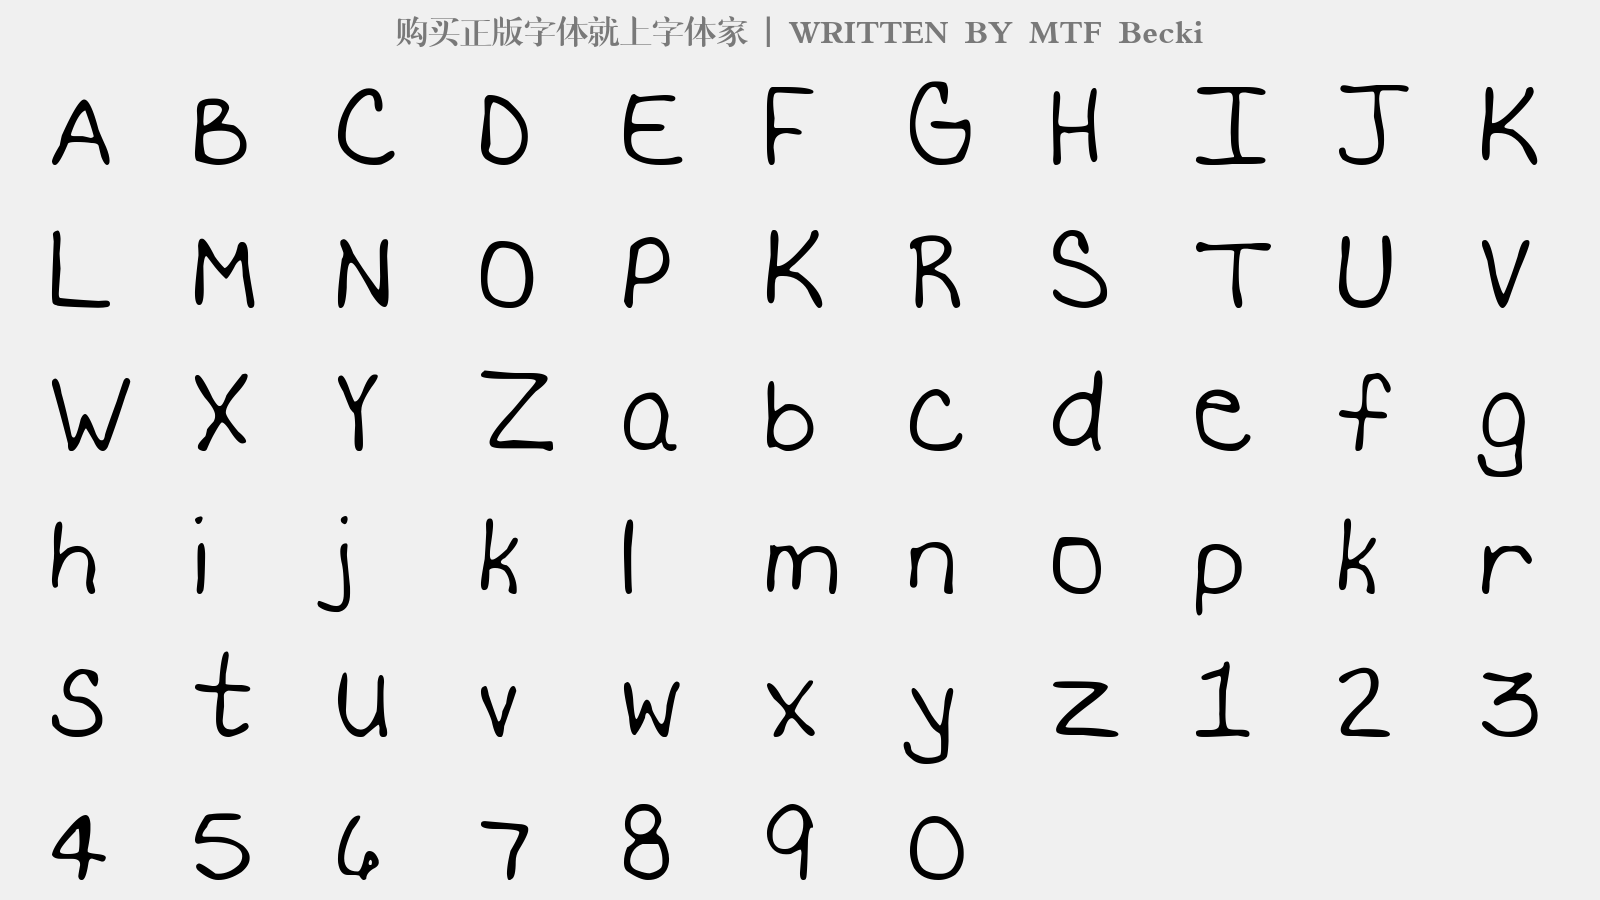 MTF Becki - 大写字母/小写字母/数字